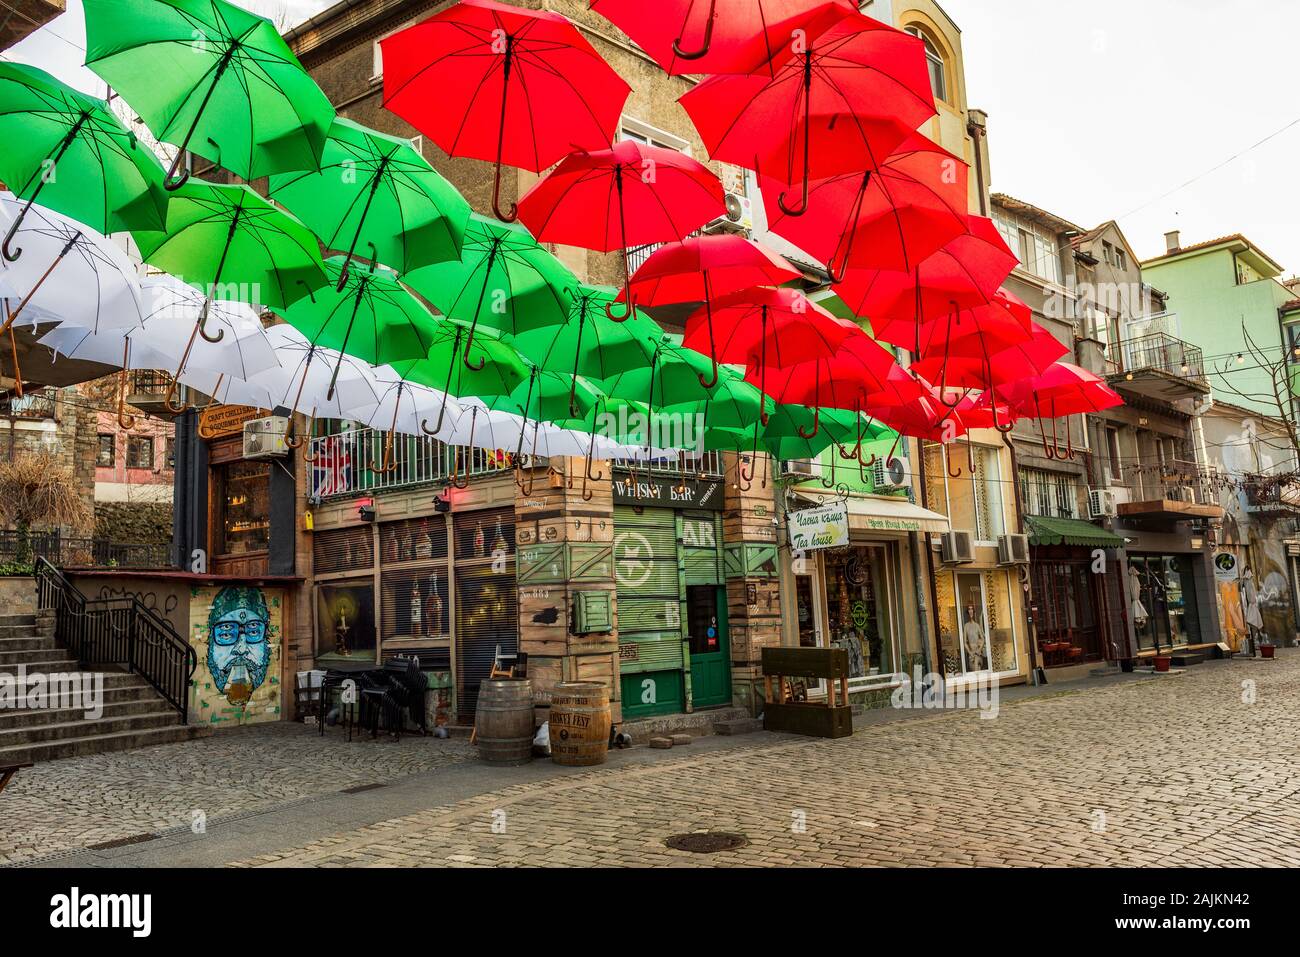 Straße und Häuser im Bezirk Kapana, Stadt von Plovdiv, Bulgarien. Bunte Sonnenschirme mit Weiß, Grün, Rot Farben aus bulgarische Flagge Stockfoto